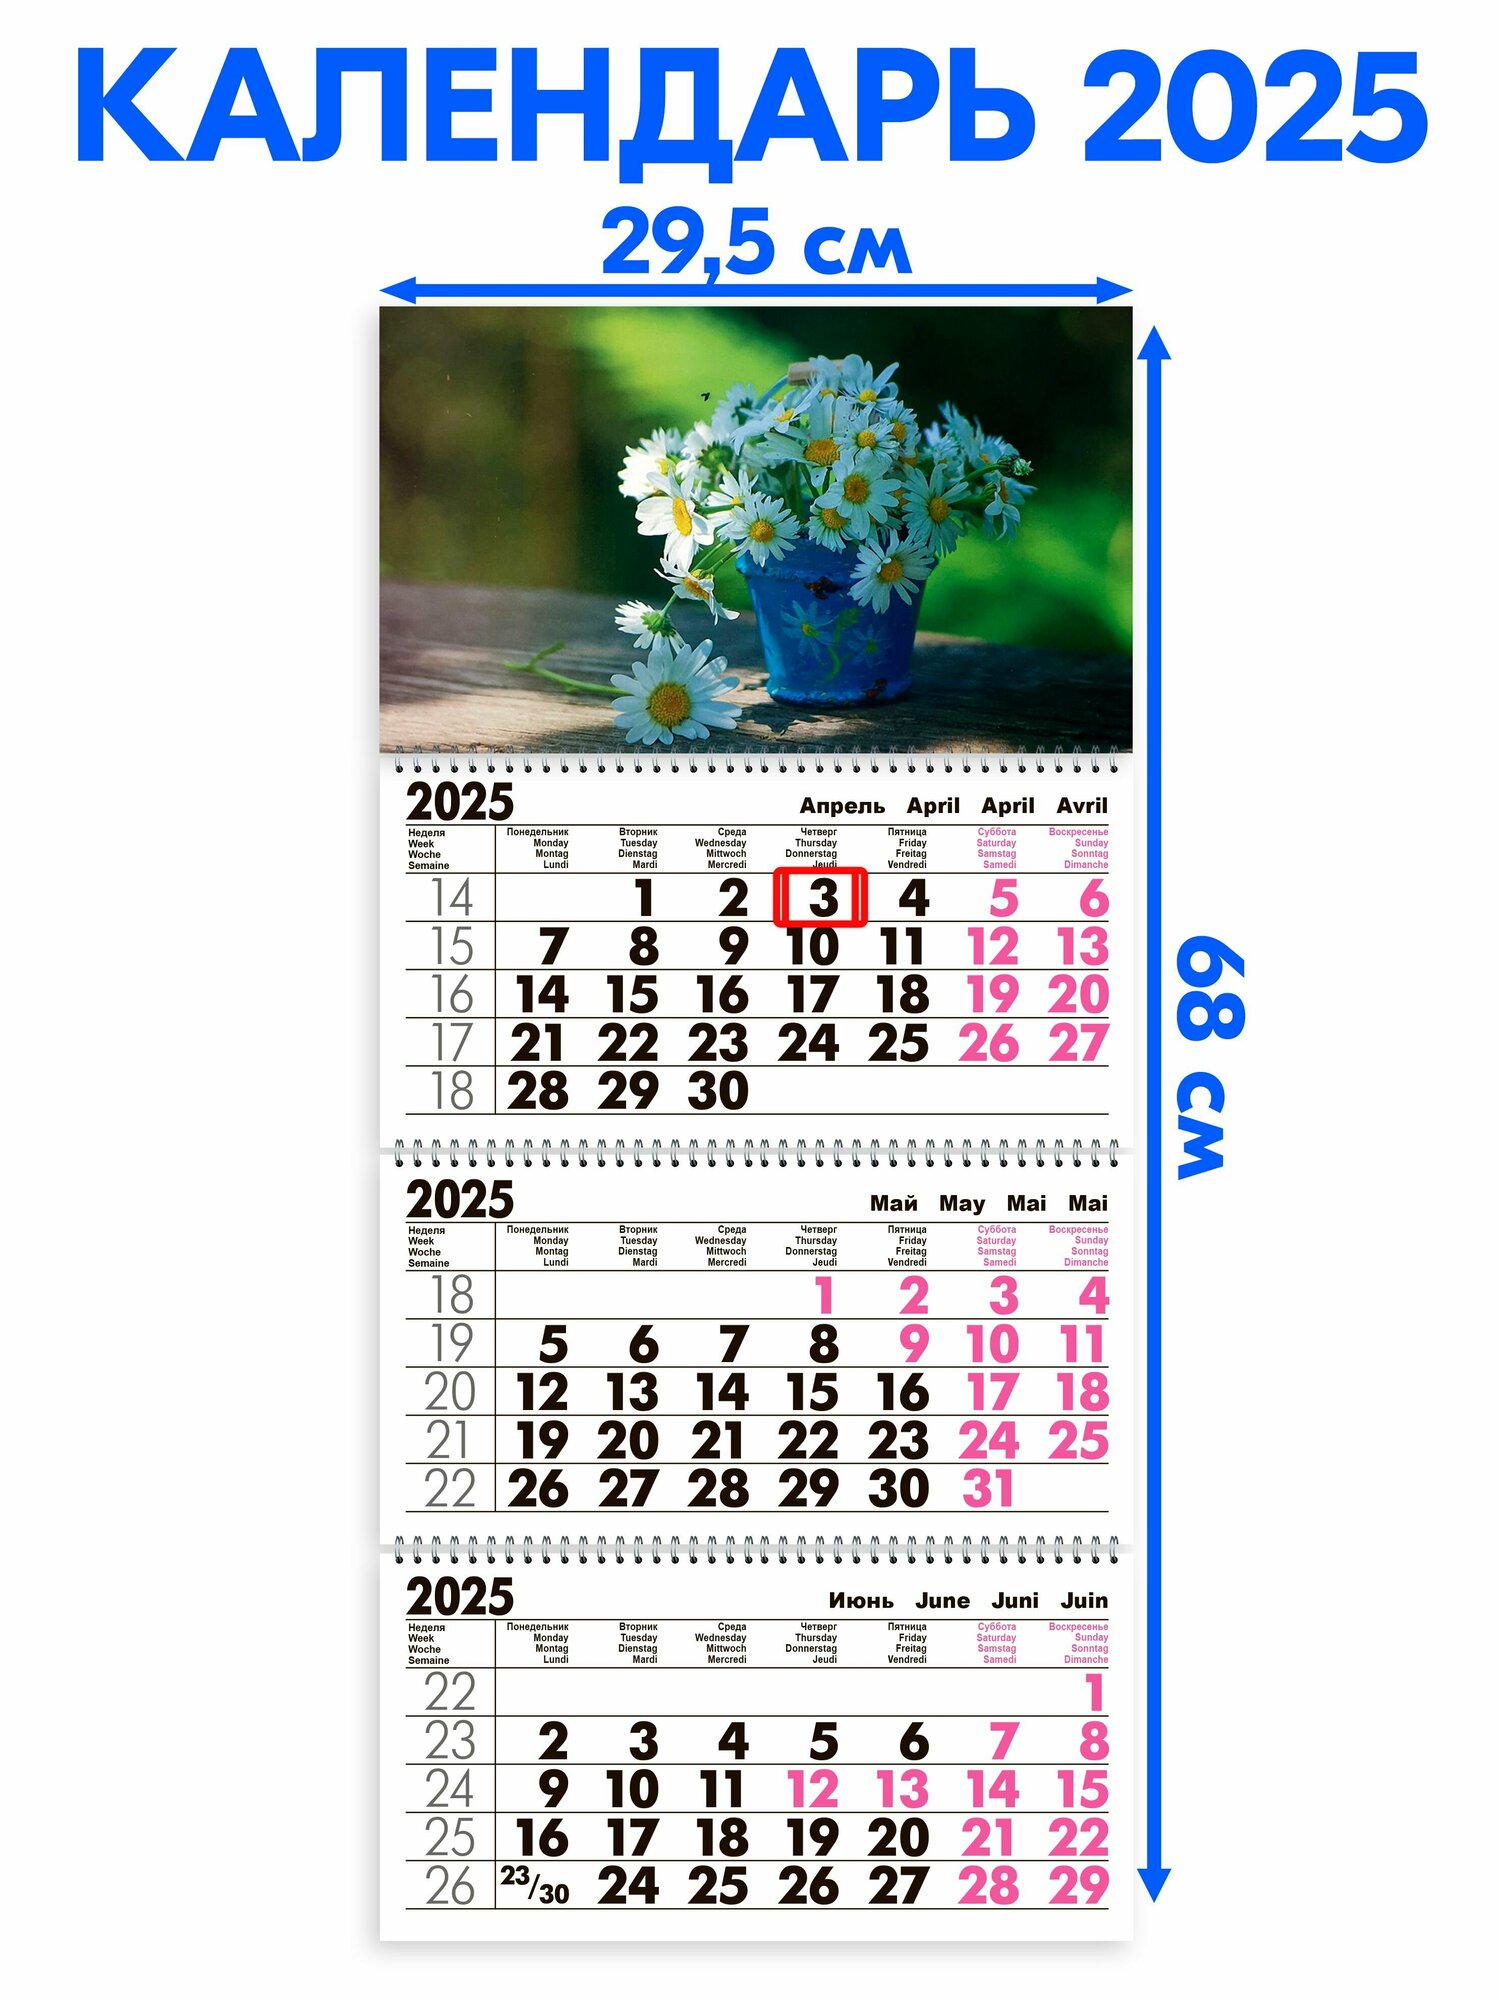 Календарь 2025 настенный трехблочный Ромашки В Корзинке. Длина календаря в развёрнутом виде - 68 см ширина - 295 см. с ндс